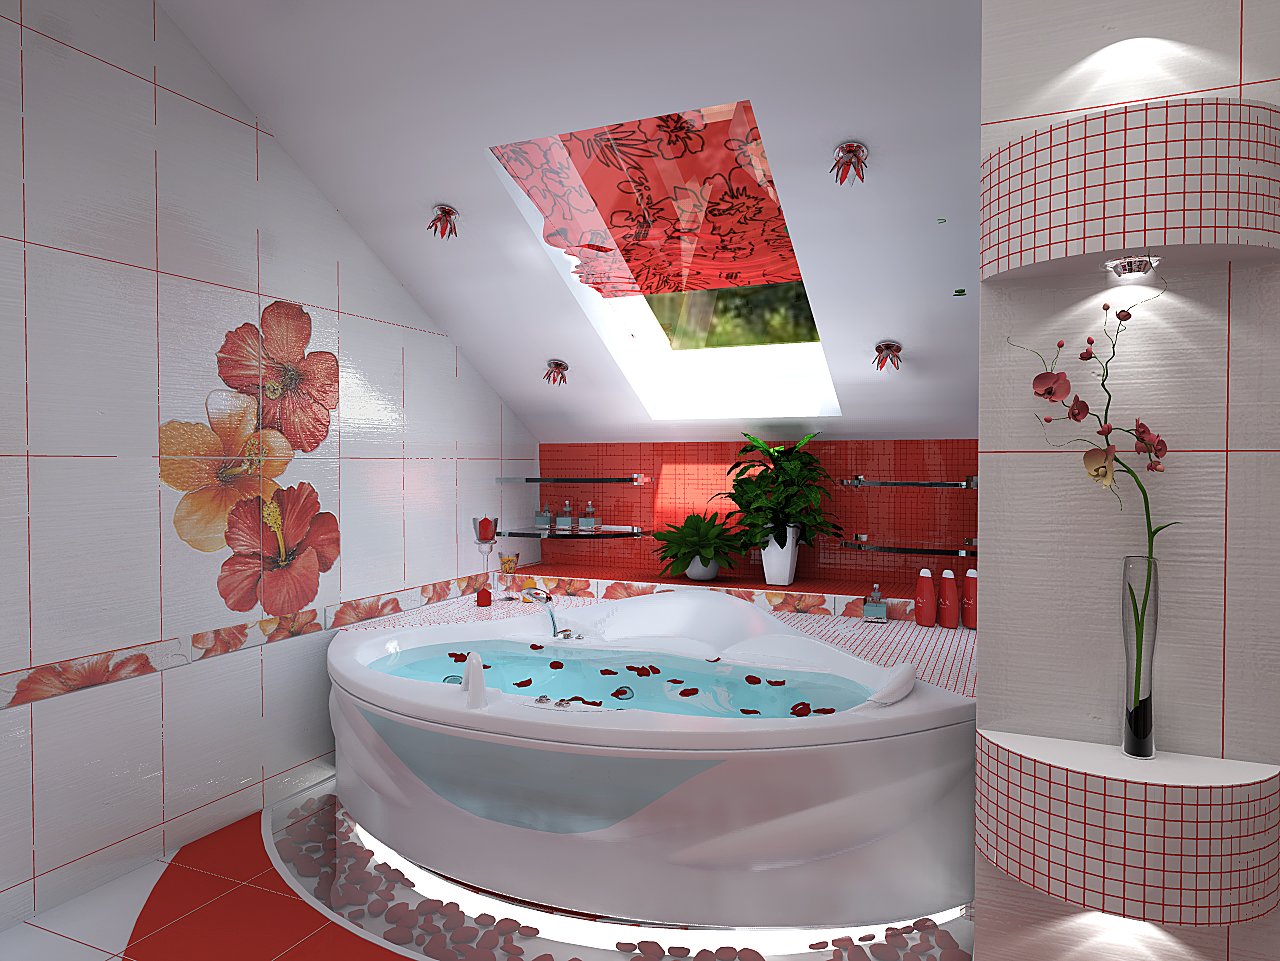 Угловая ванна - фото дизайна и интерьера ванной комнаты